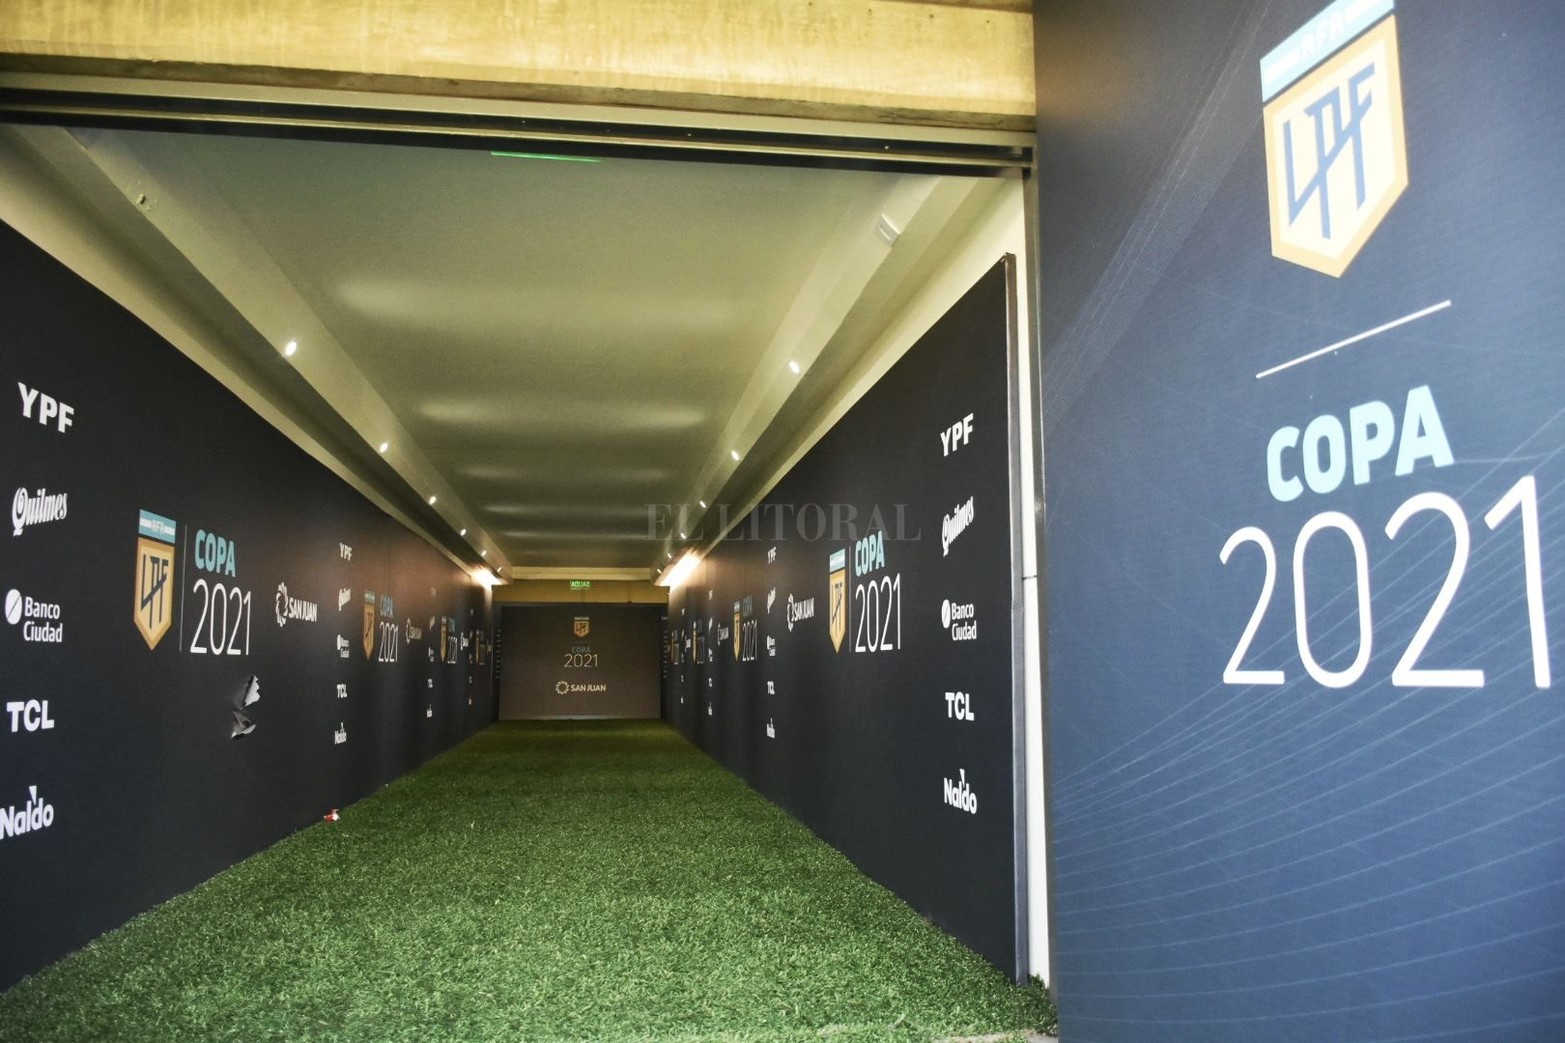 El túnel que lleva desde los vestuarios, ubicados en un primer piso, hasta el campo de juego. Lo transitarán los 22 jugadores de la final y terminado el partido, los 11 campeones.